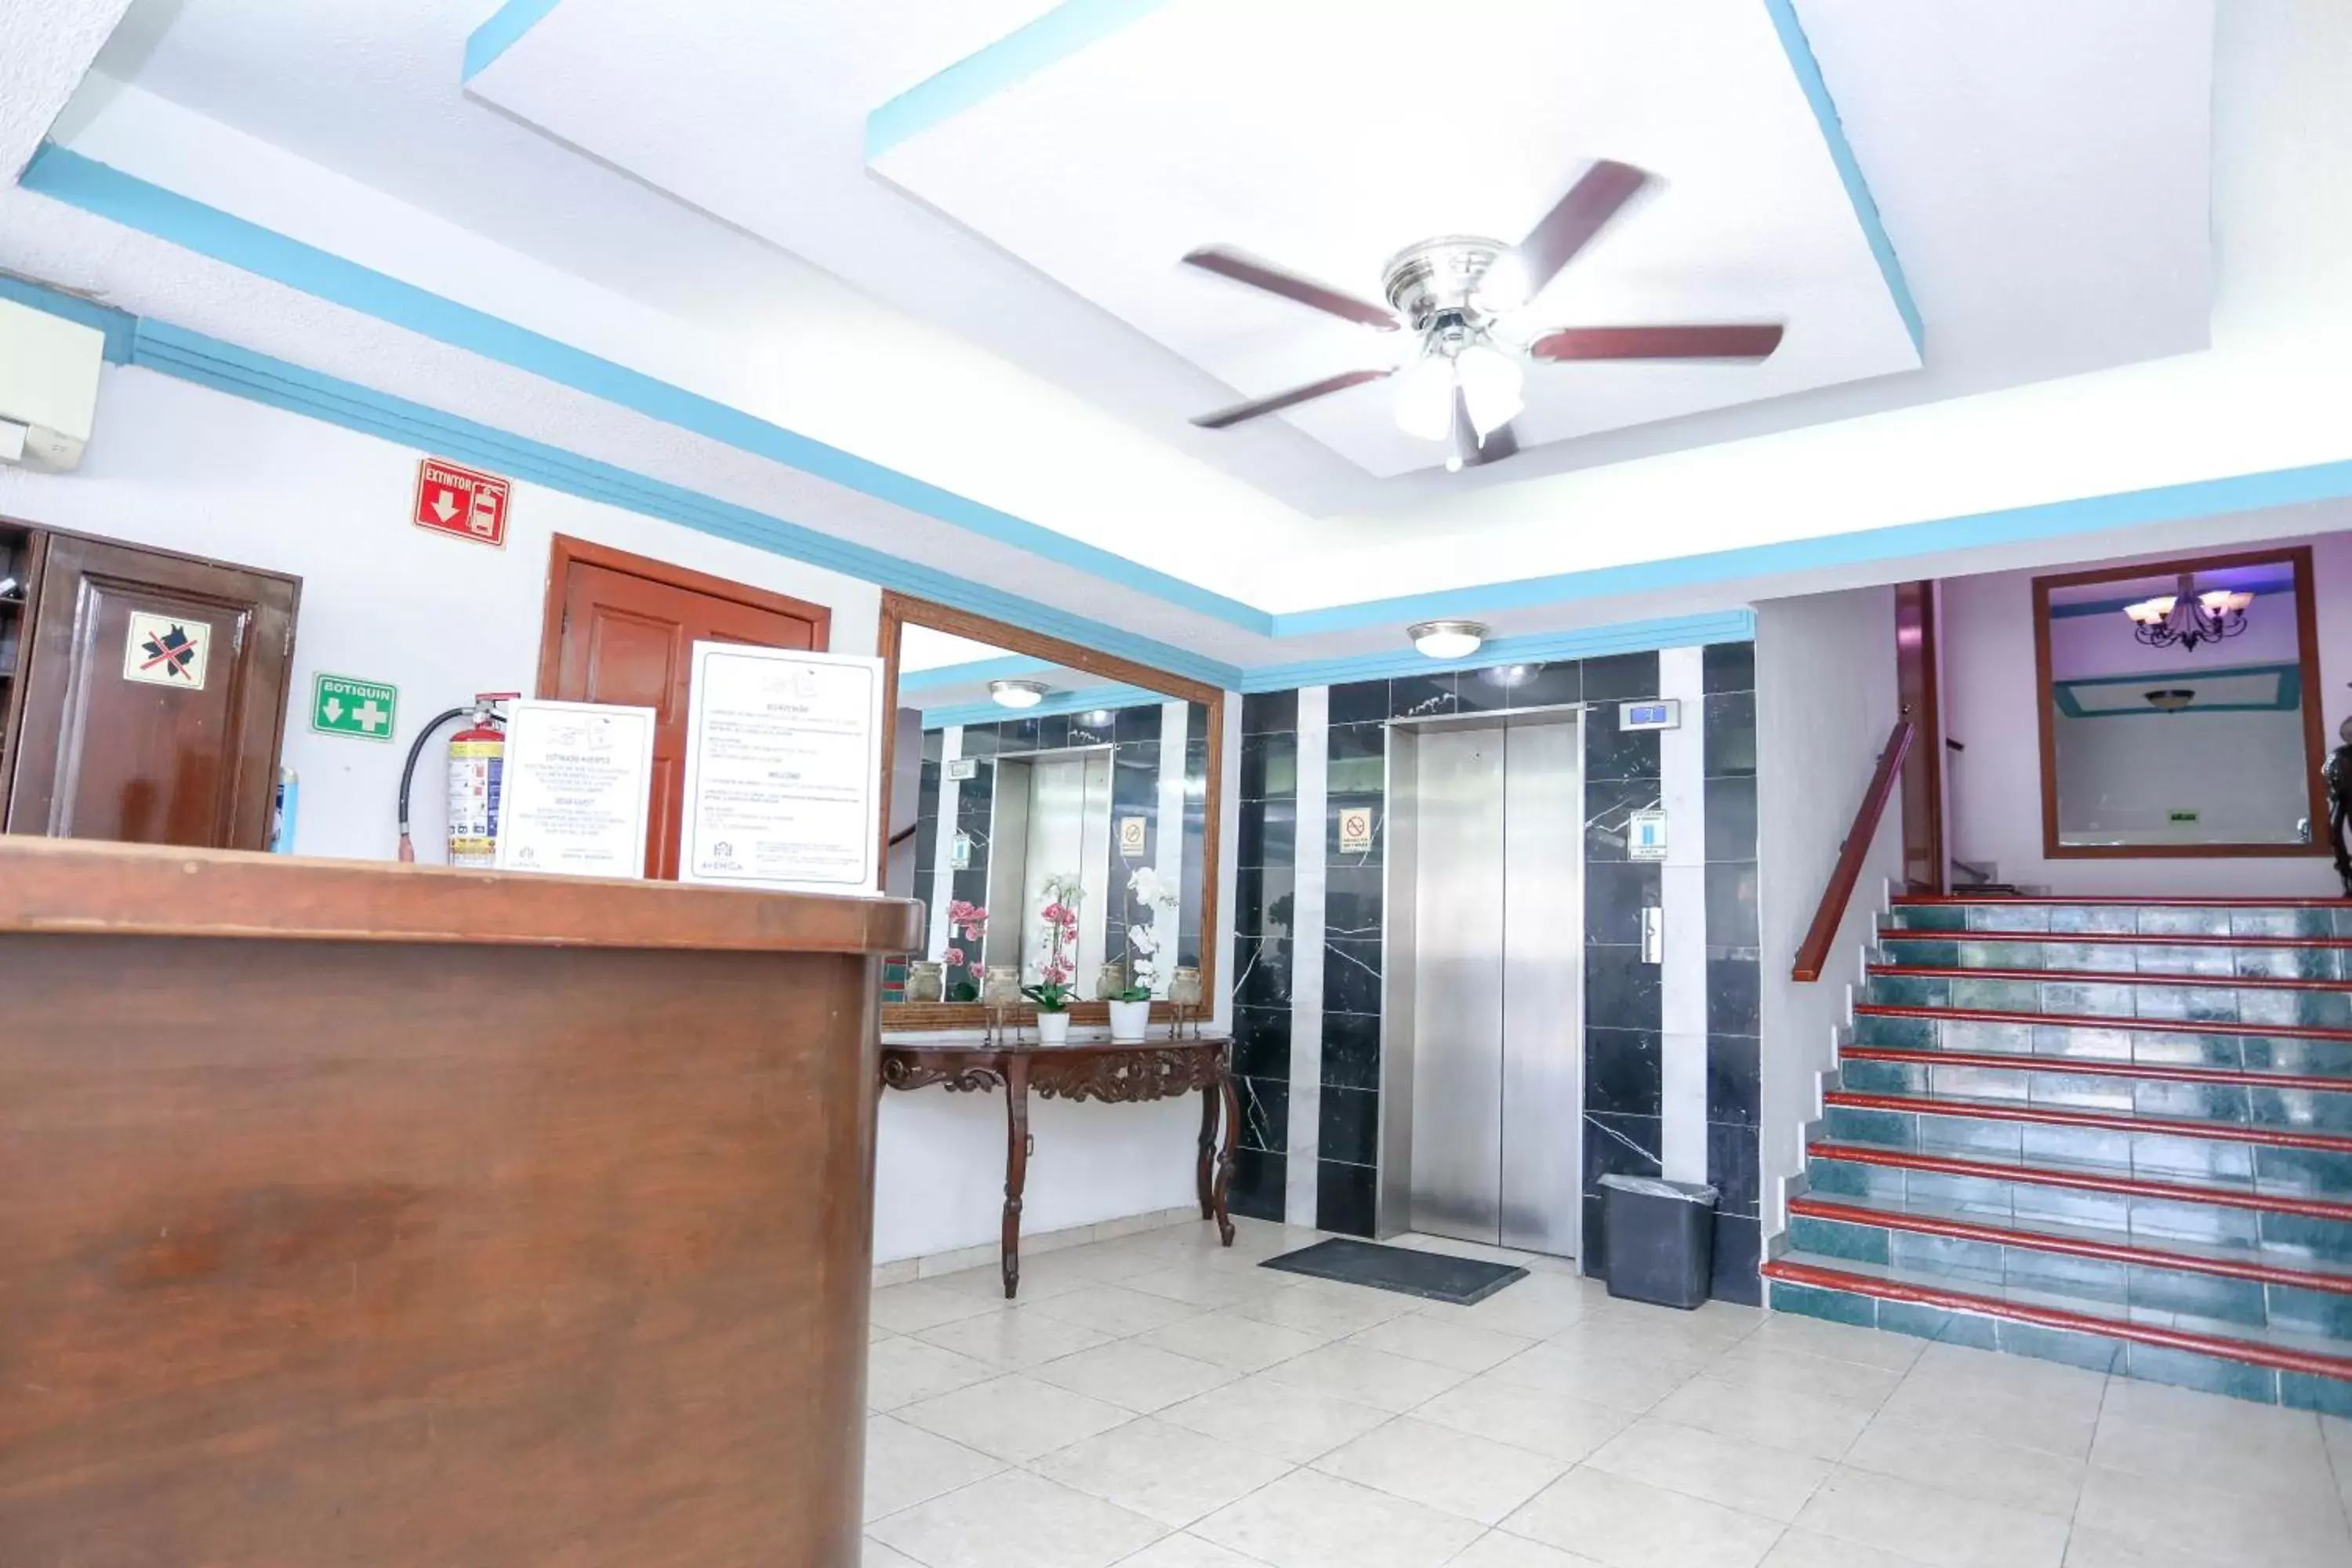 Lobby or reception, Lobby/Reception in Hotel Avenida Cancun